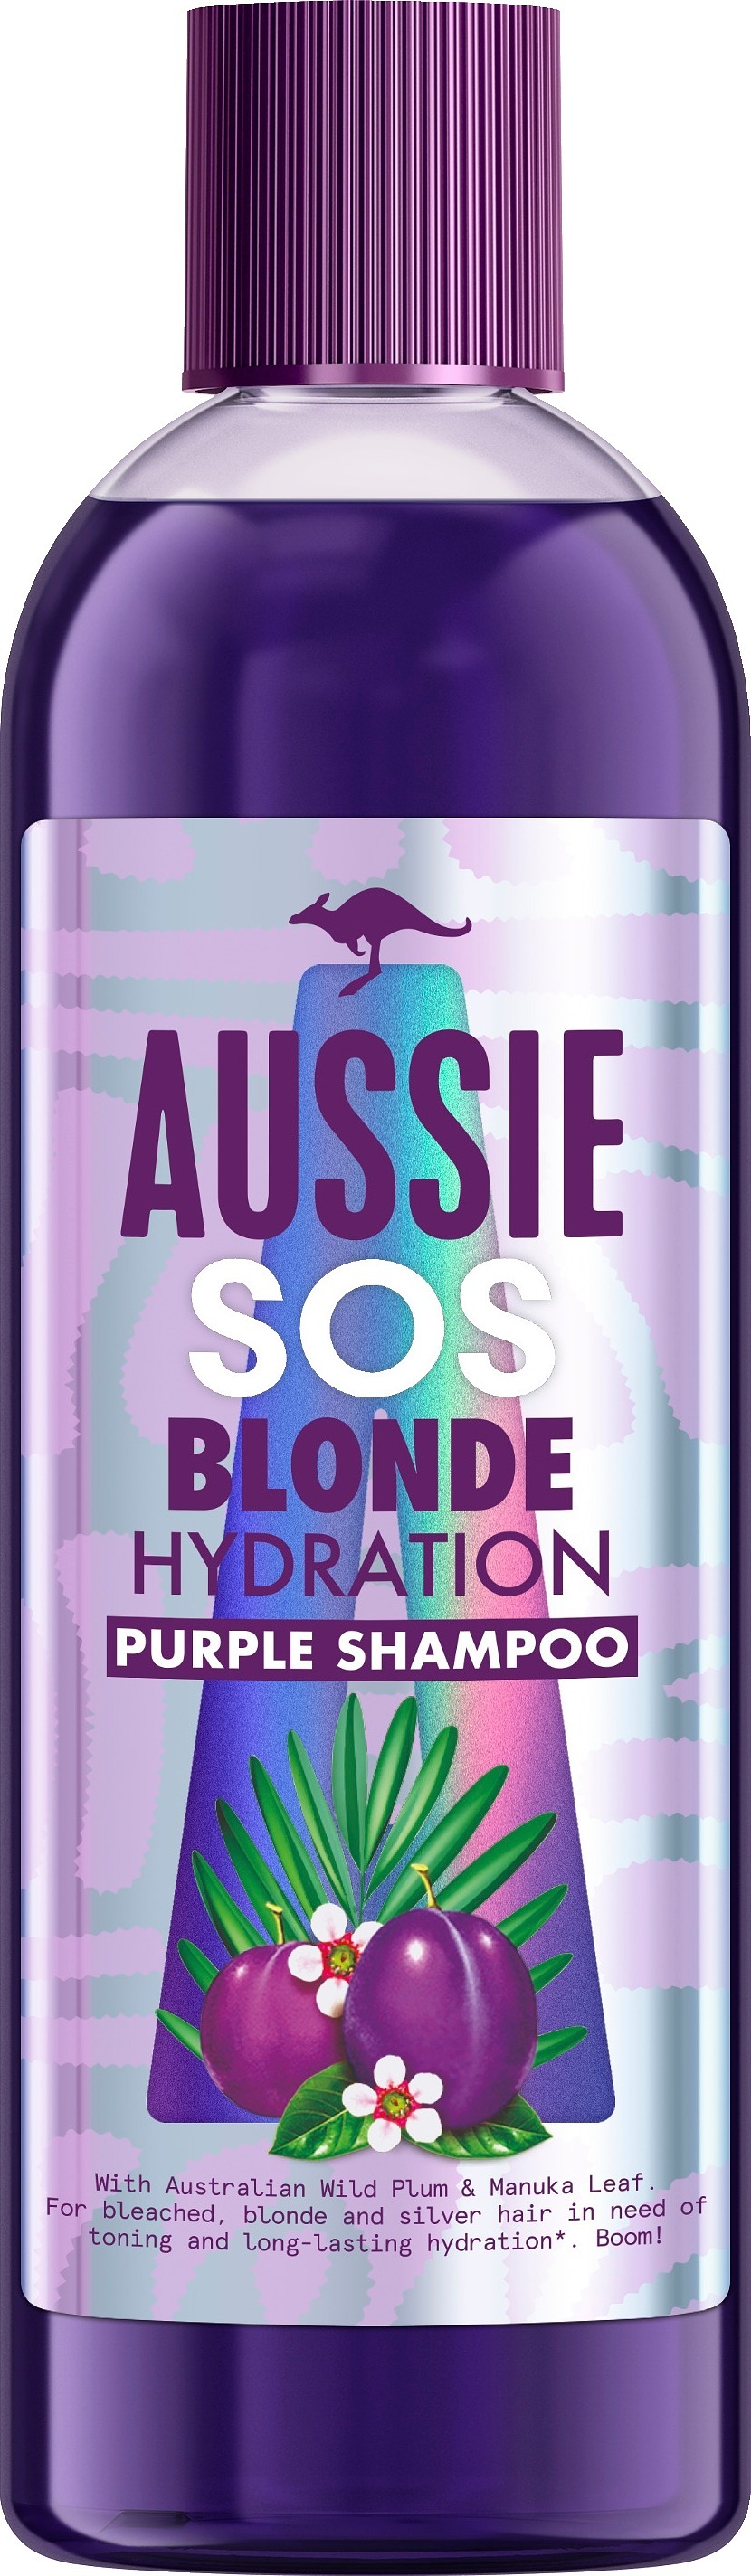 Aussie SOS Blonde Hydration Purple Shampoo 200 ml